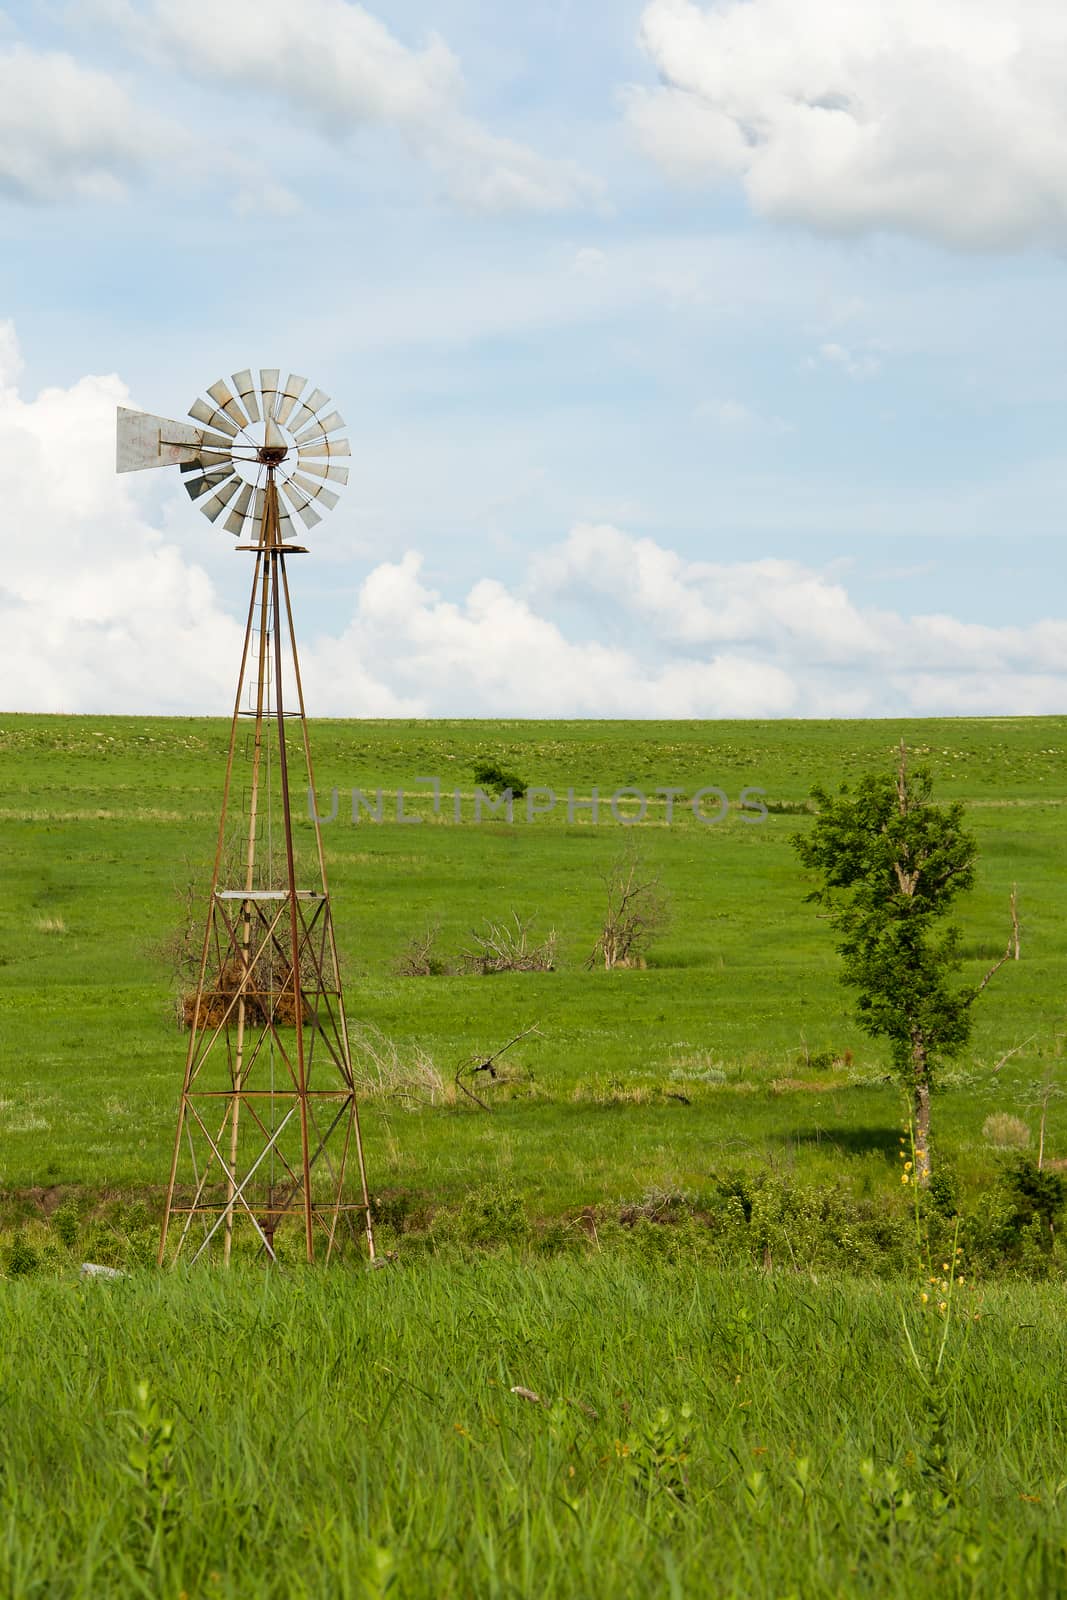 A windmill in a field in the Flint Hills of Kansas